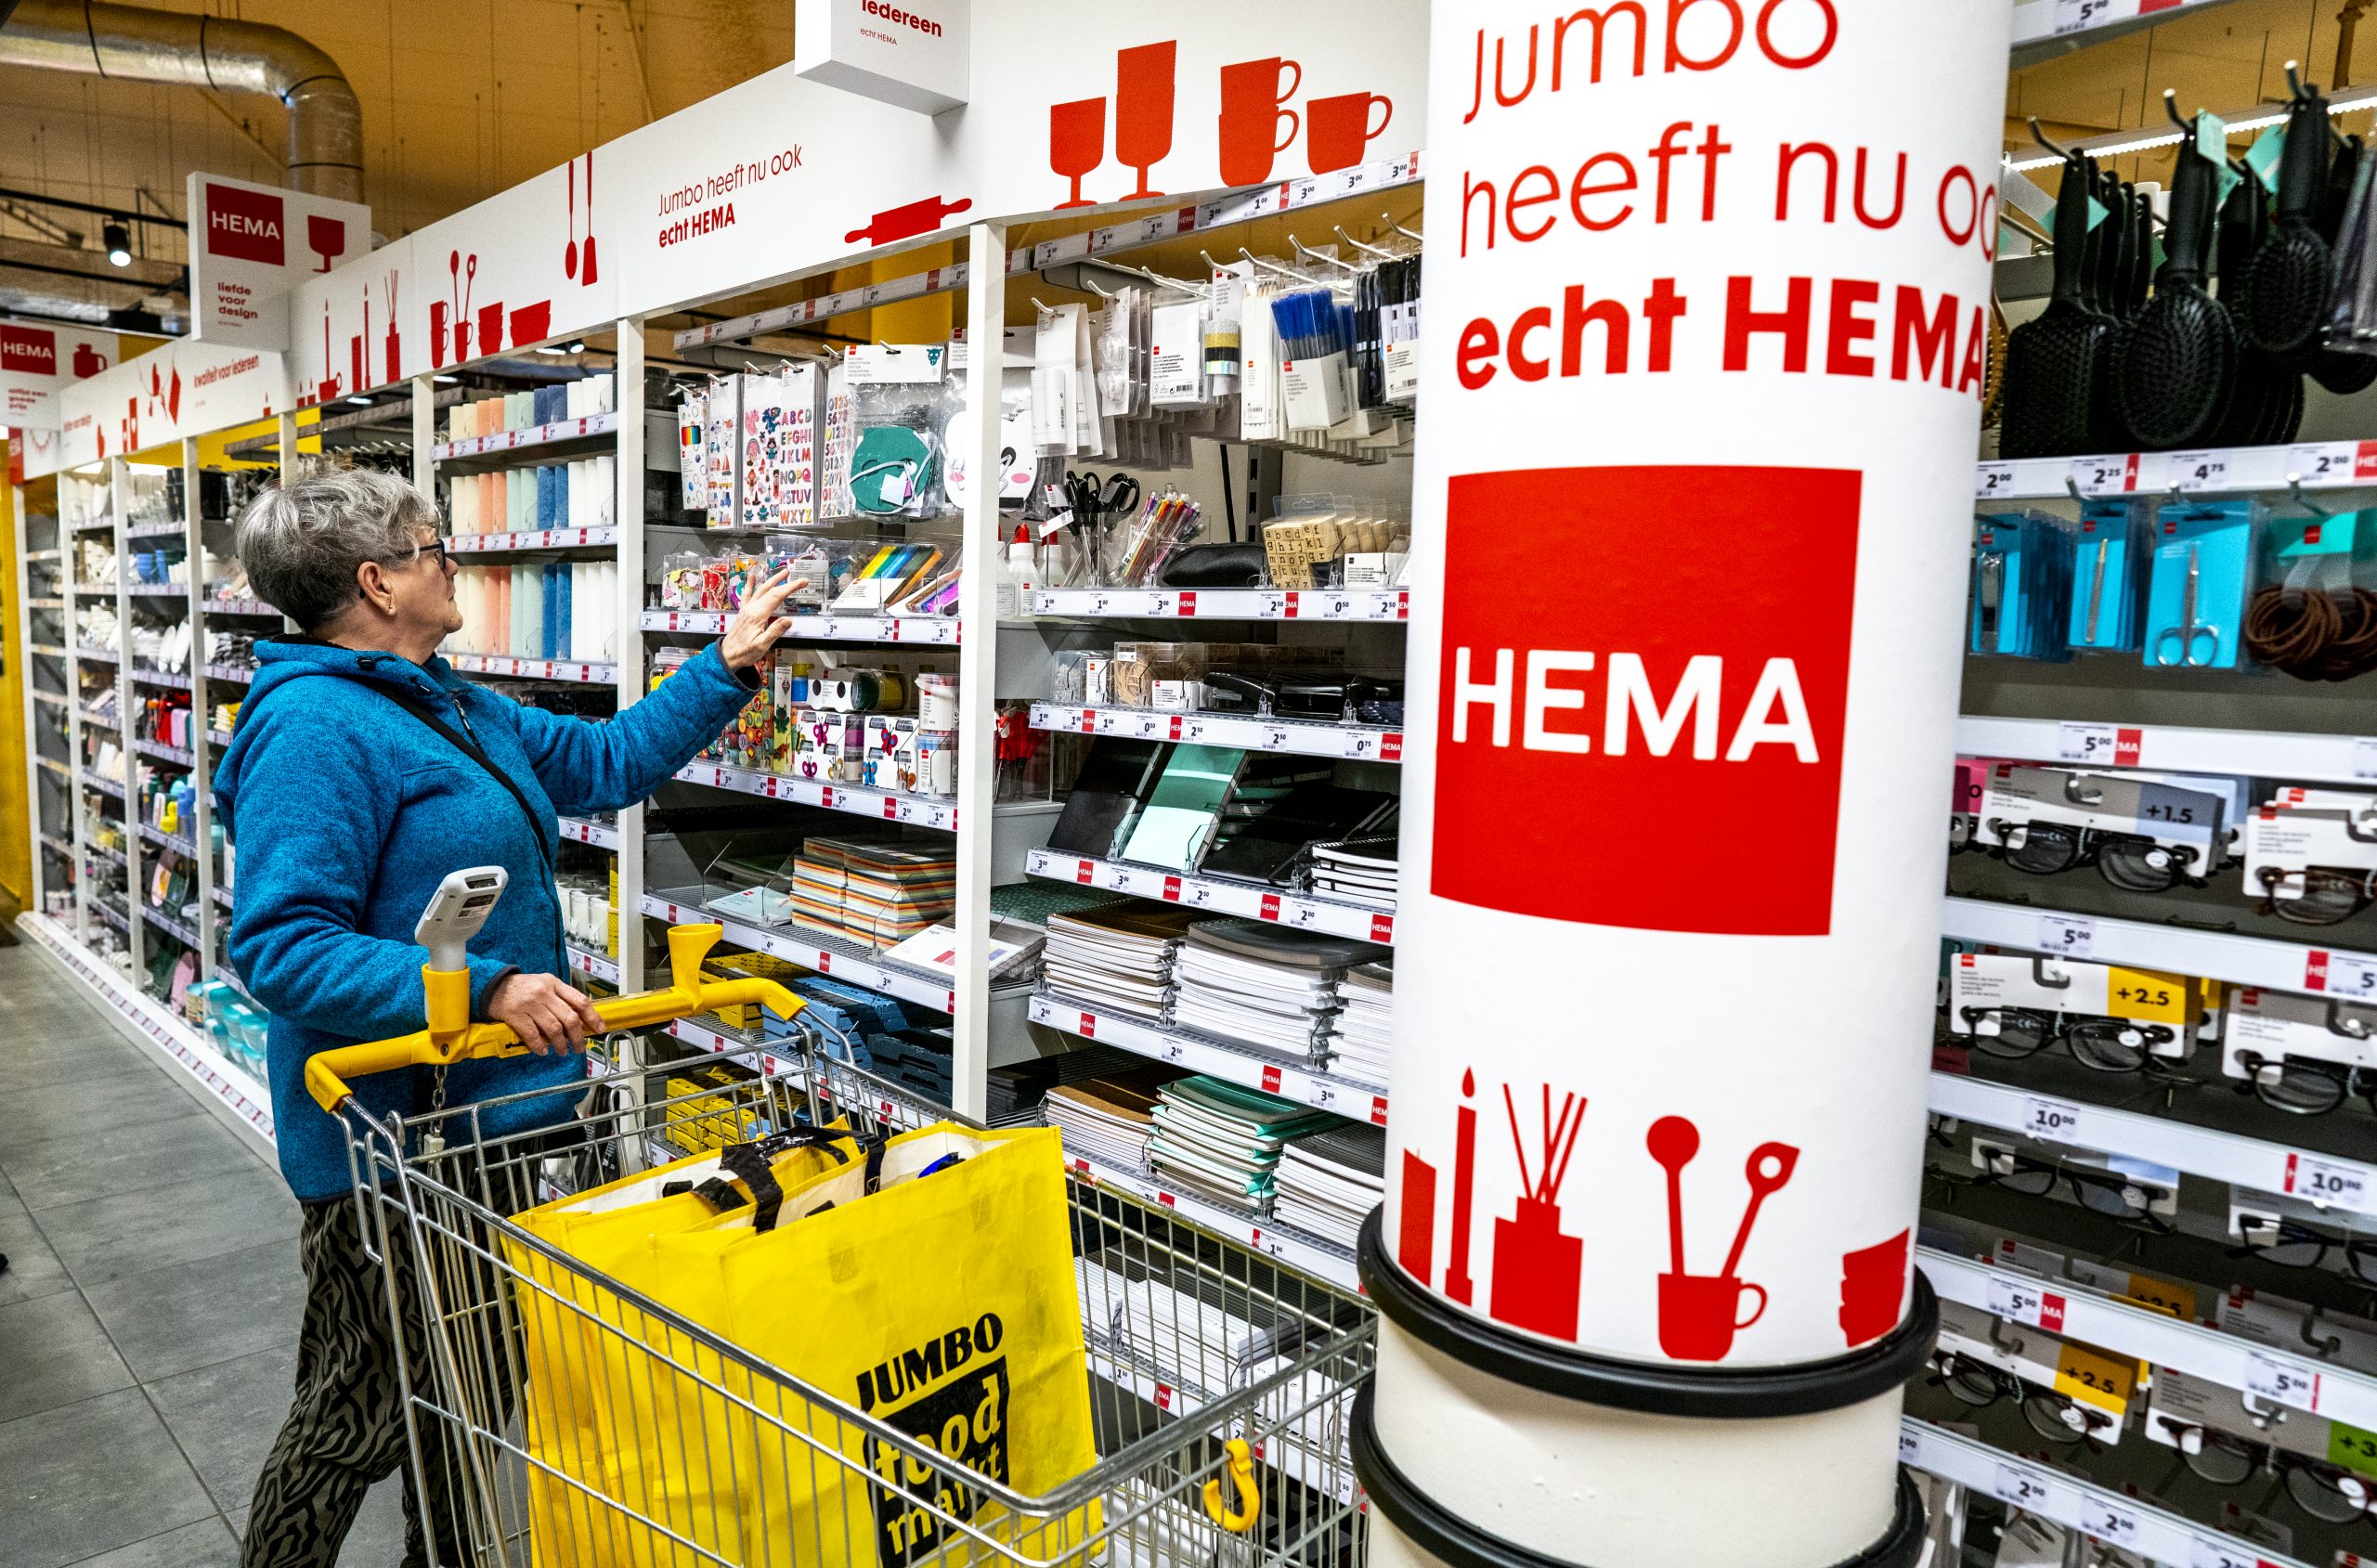 Foto: Een HEMA-schap bij een Jumbo-vestiging in Den Haag. Bron: ANP/Jerry Lampen